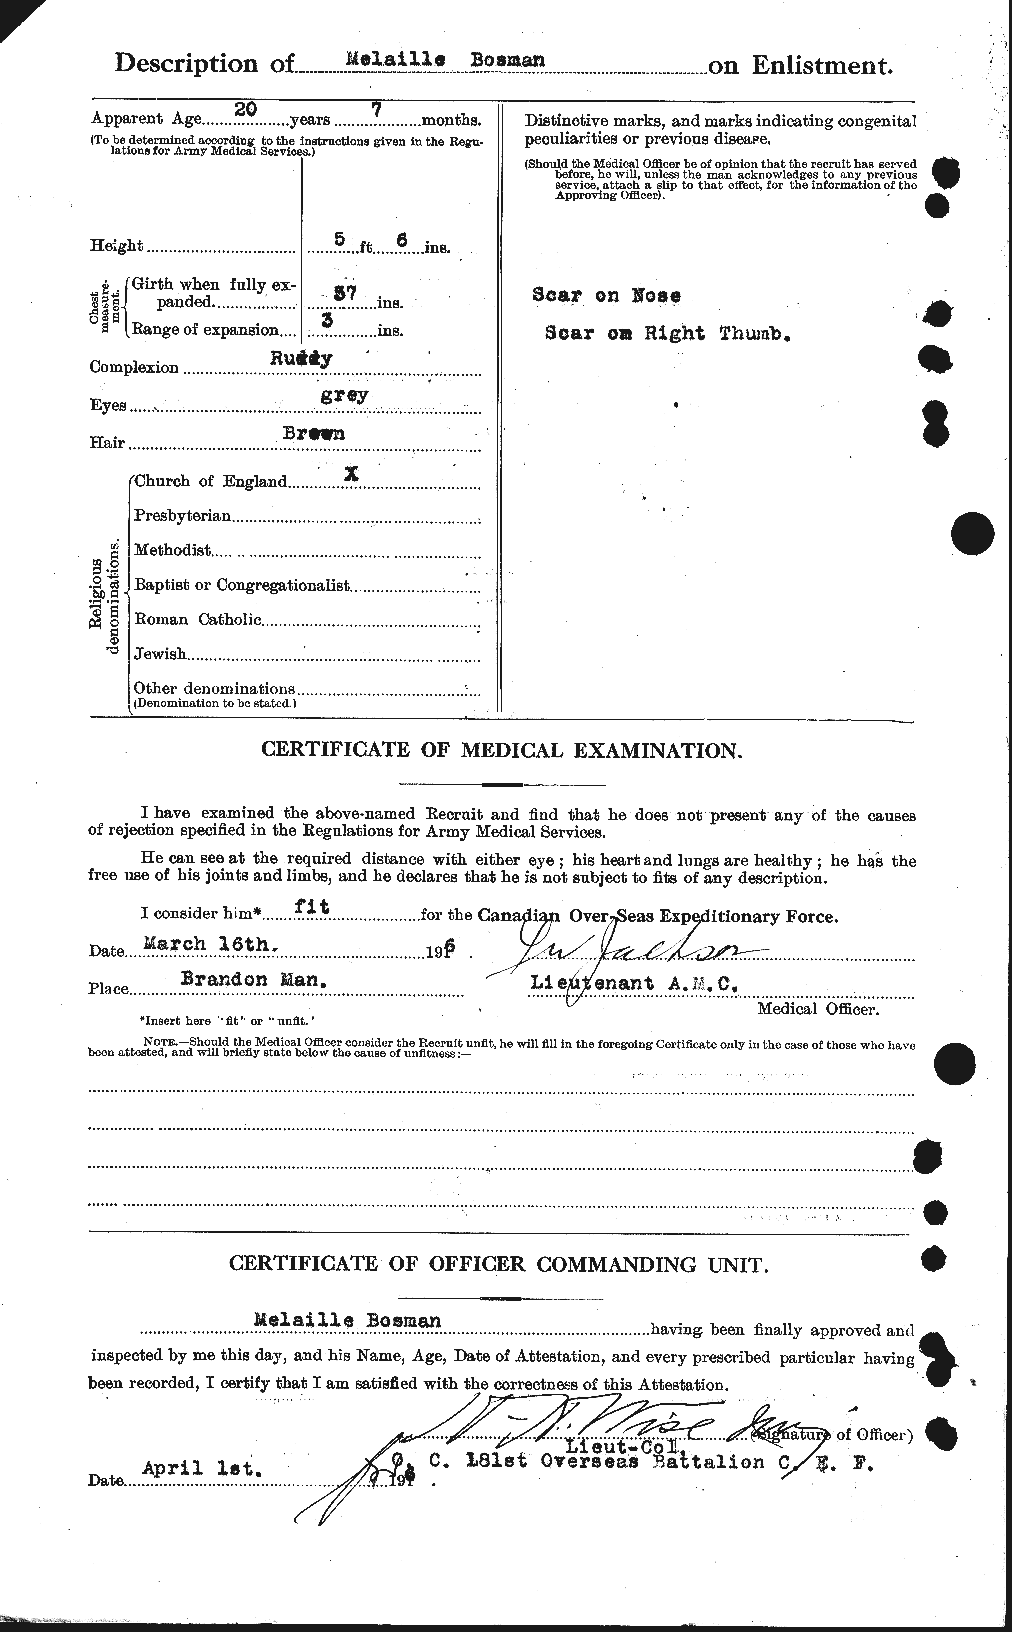 Dossiers du Personnel de la Première Guerre mondiale - CEC 251796b